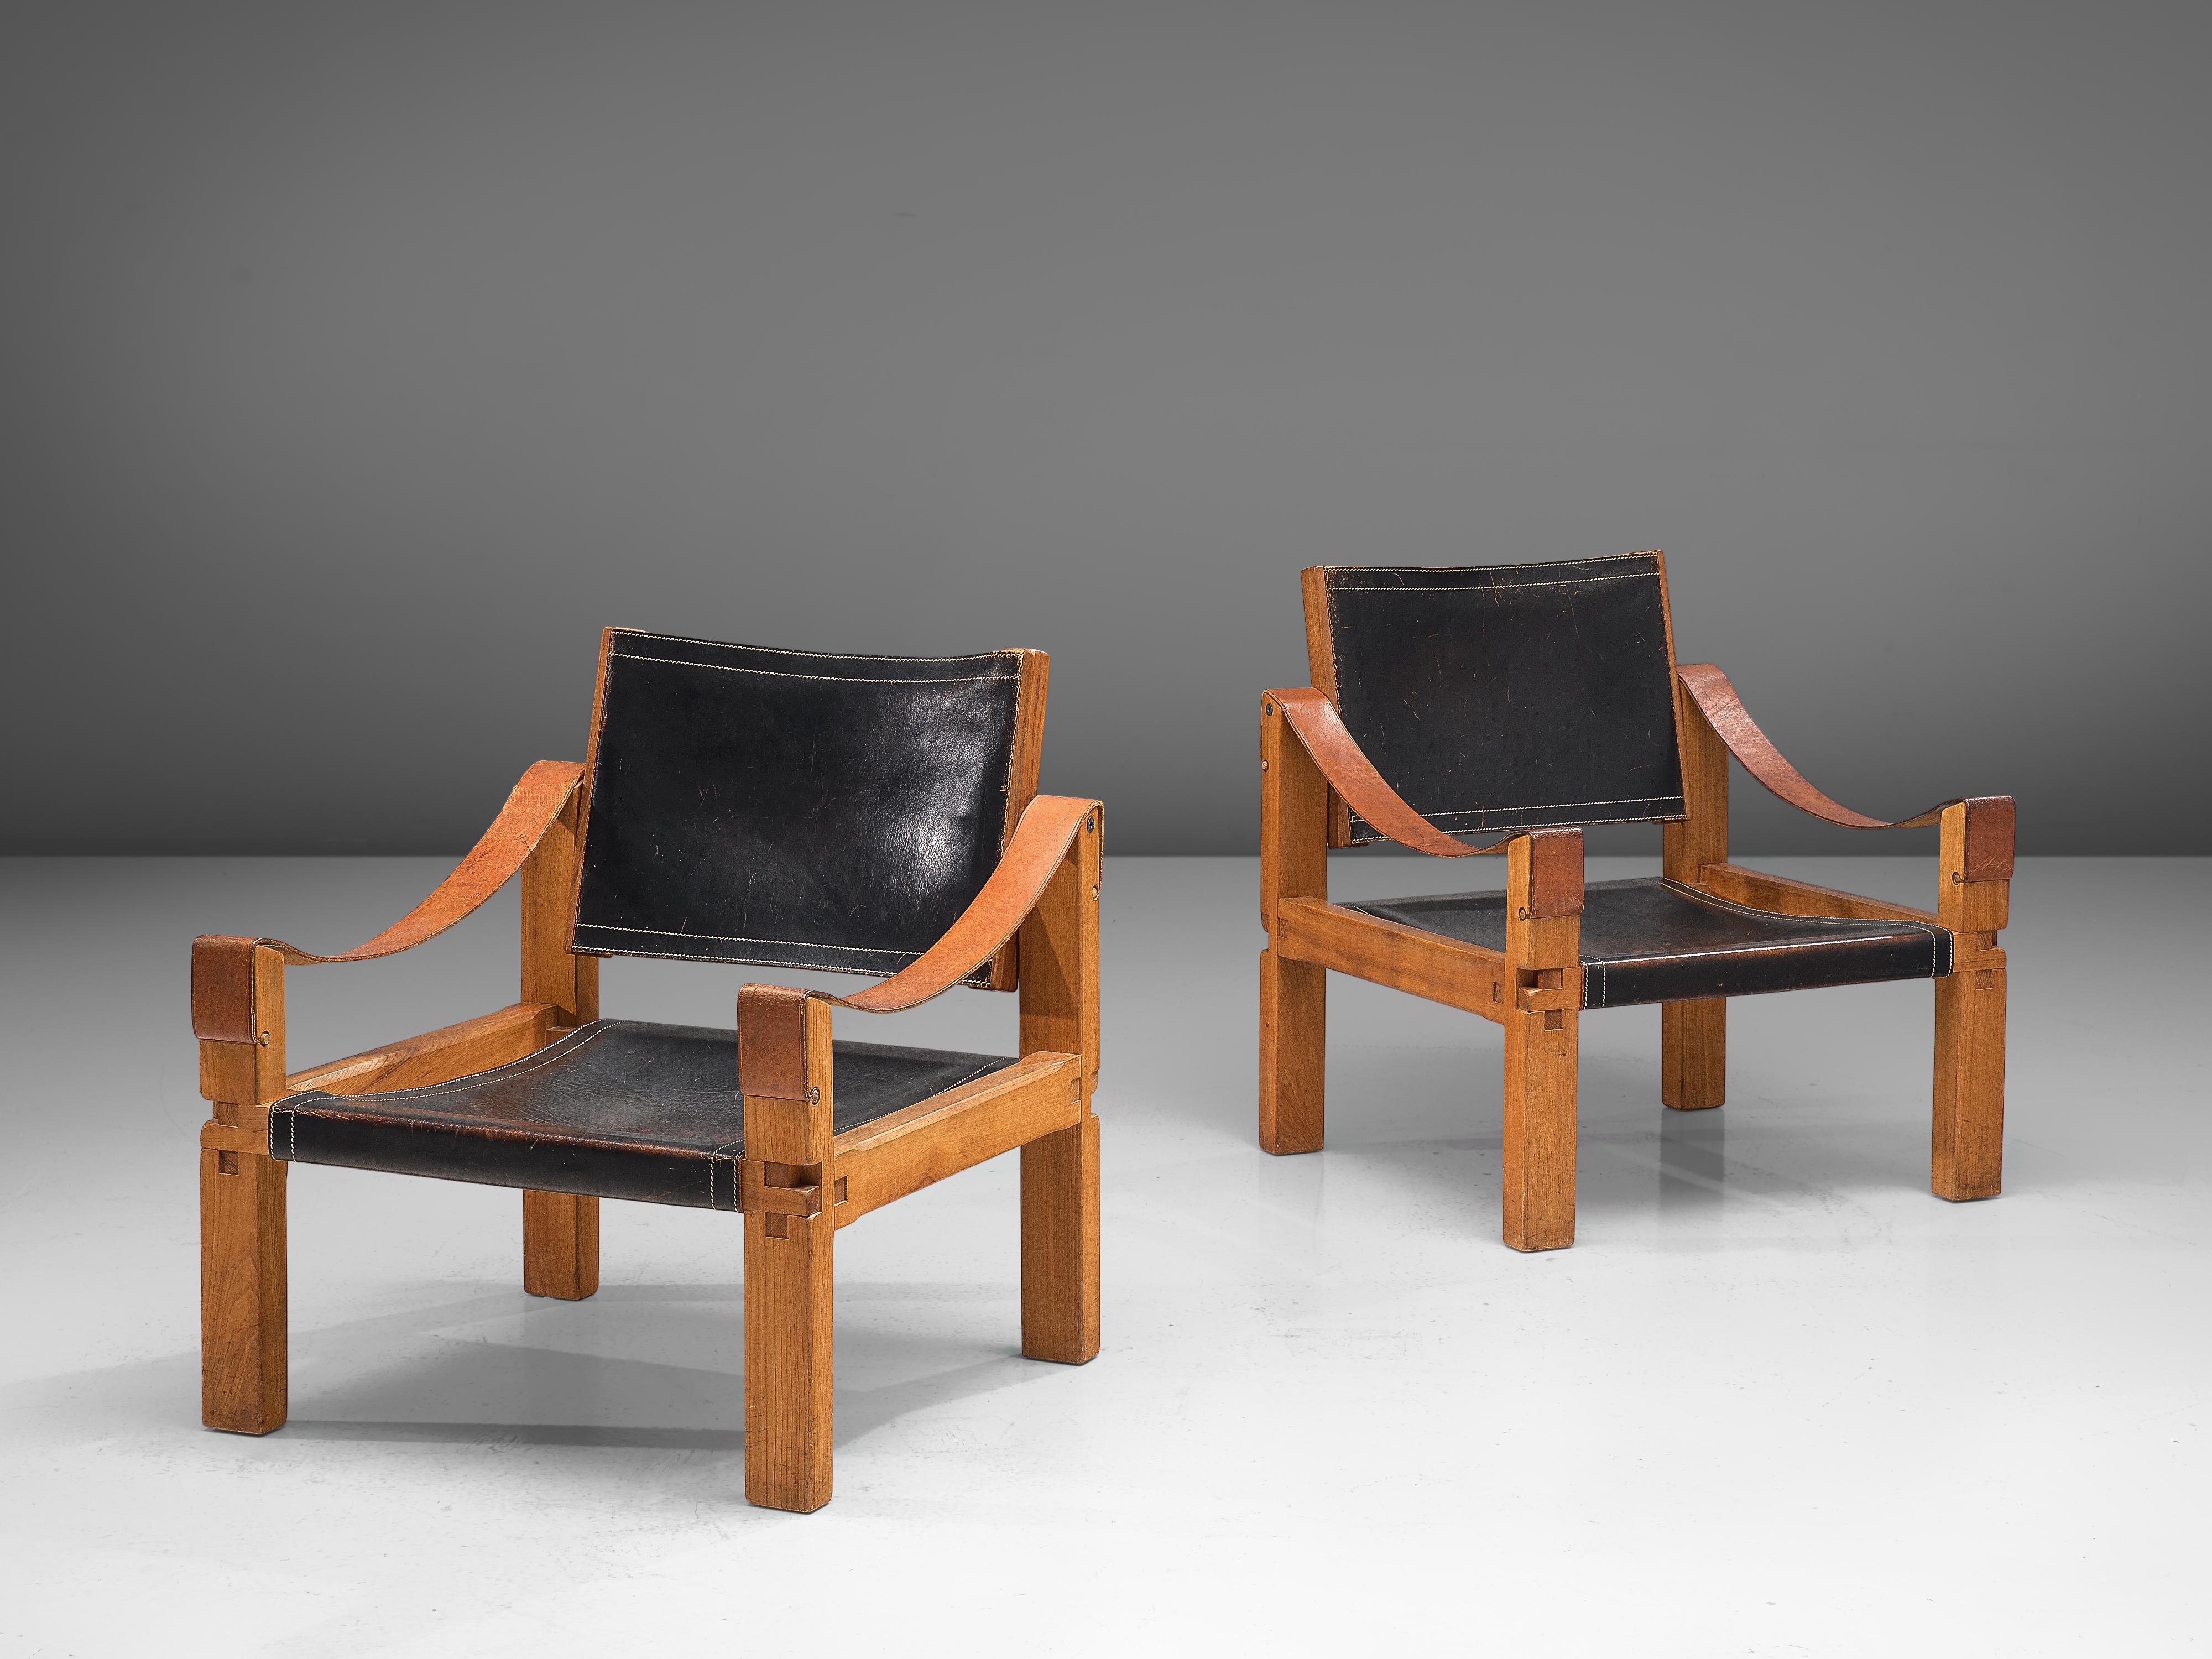 Pierre Chapo, Sesselpaar Modell 'S10X', Ulme, Leder, Frankreich, um 1964.

Bei diesem Entwurf handelt es sich um eine frühe Ausgabe, die nach der ursprünglichen handwerklichen Methode von Pierre Chapo erstellt wurde. Diese bequemen Sessel aus